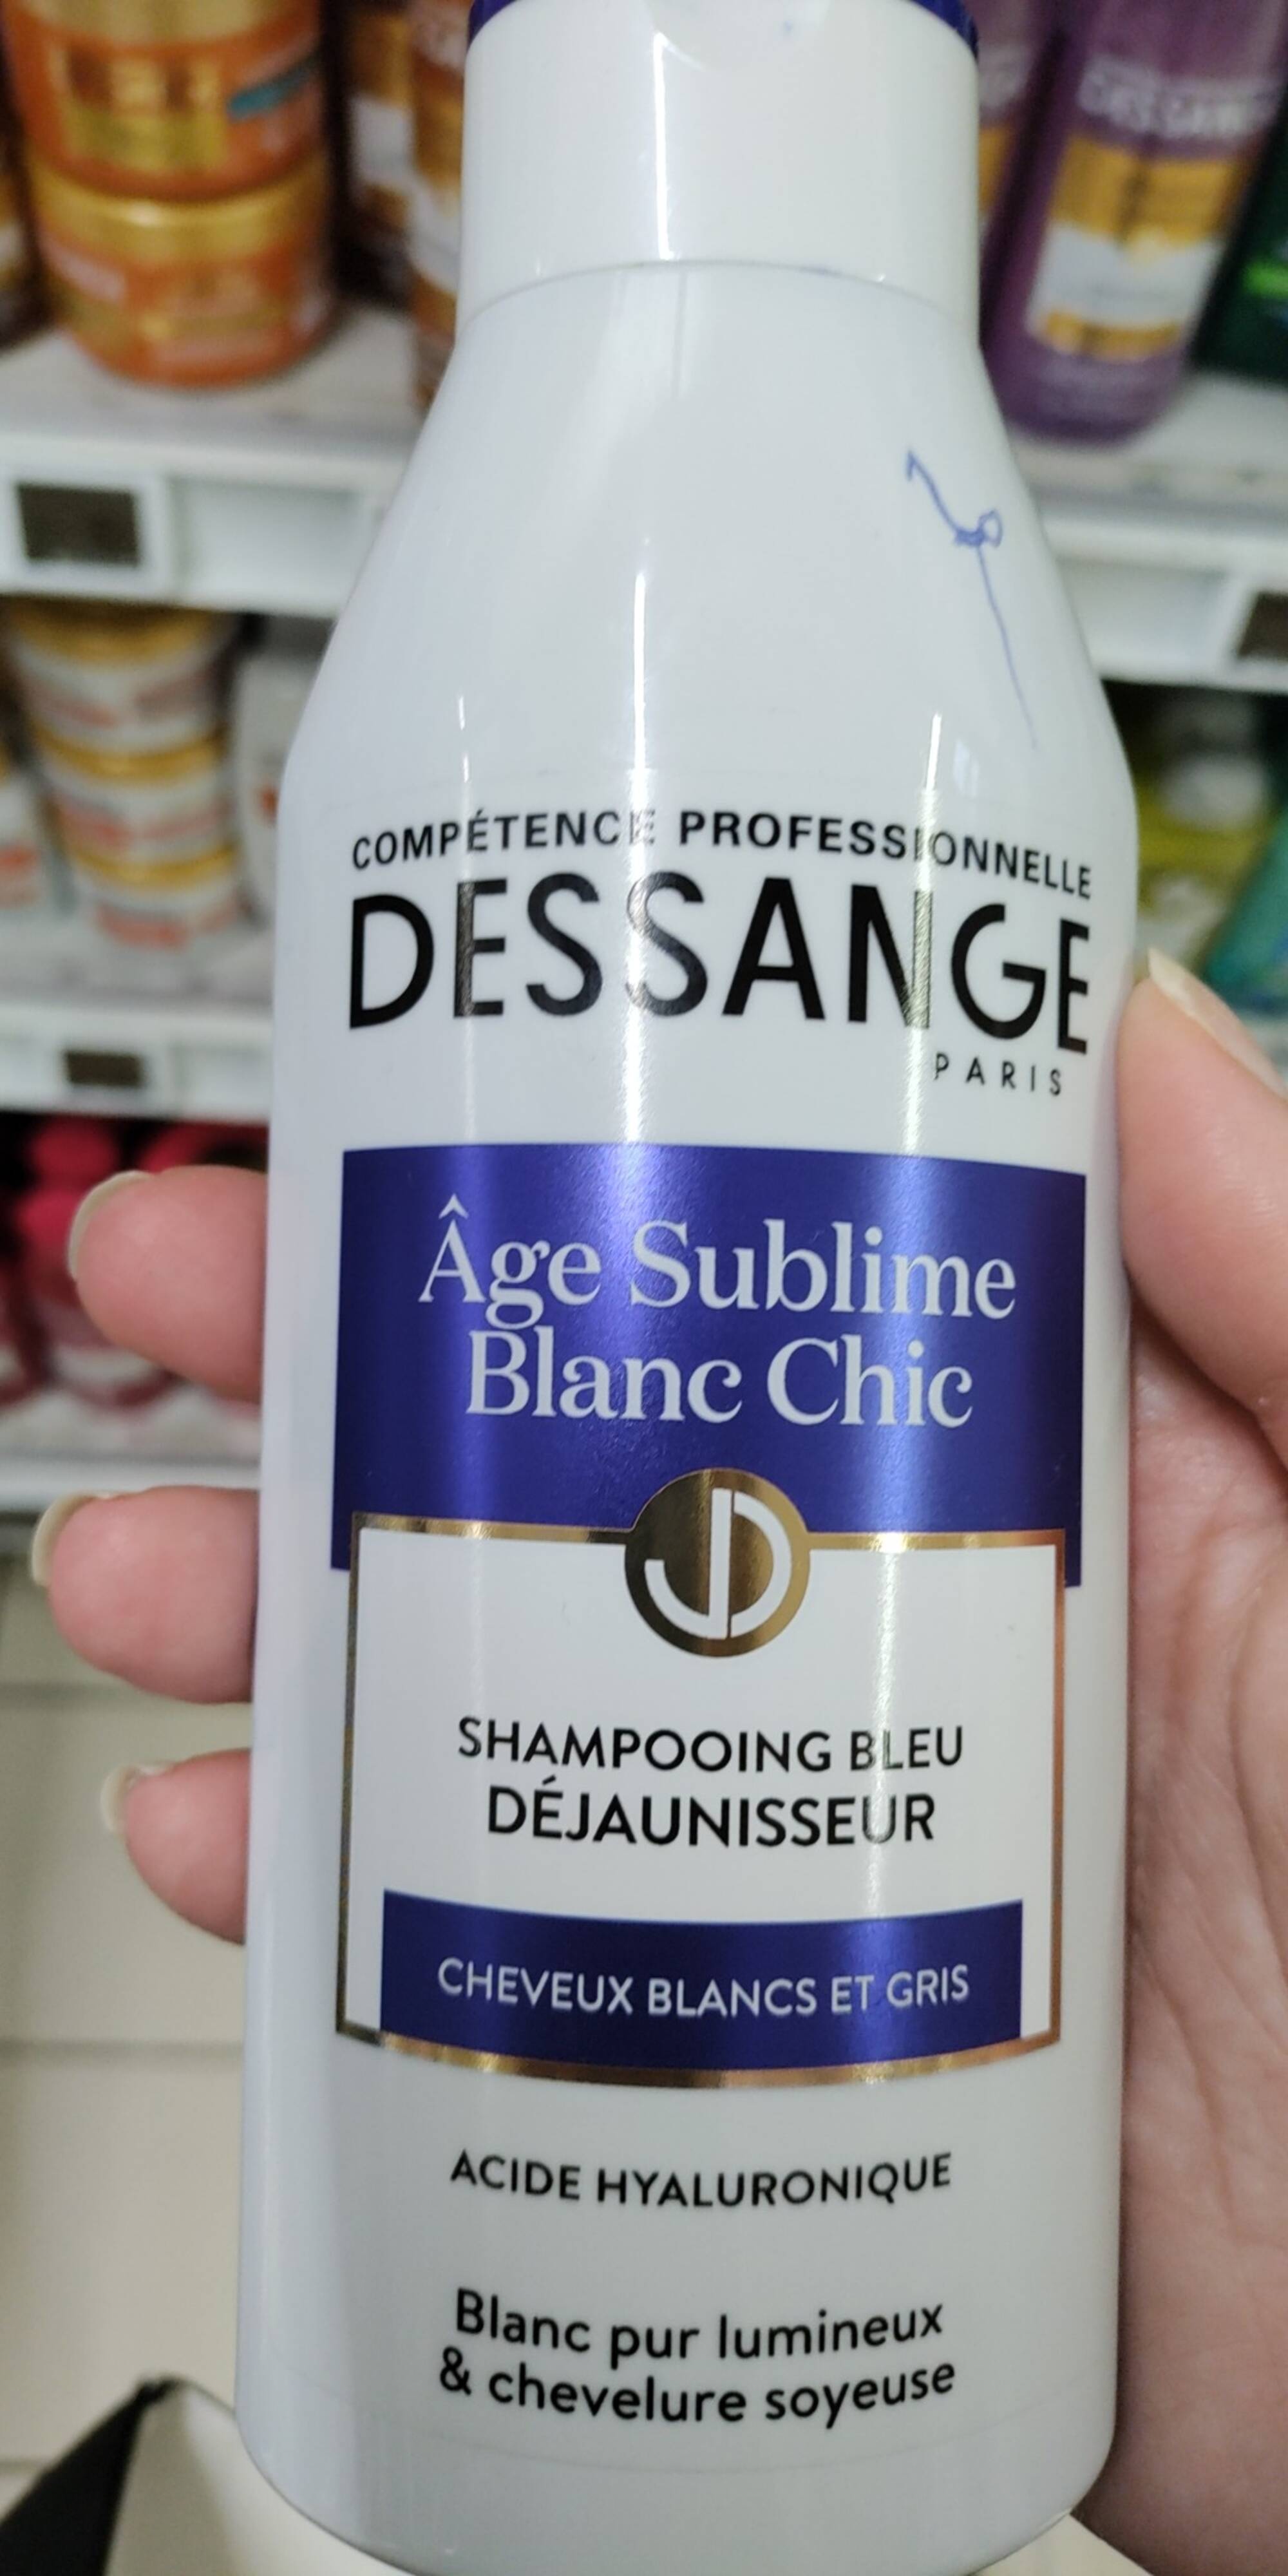 DESSANGE - Âge sublime blanc chic - Shampooing bleu déjaunisseur